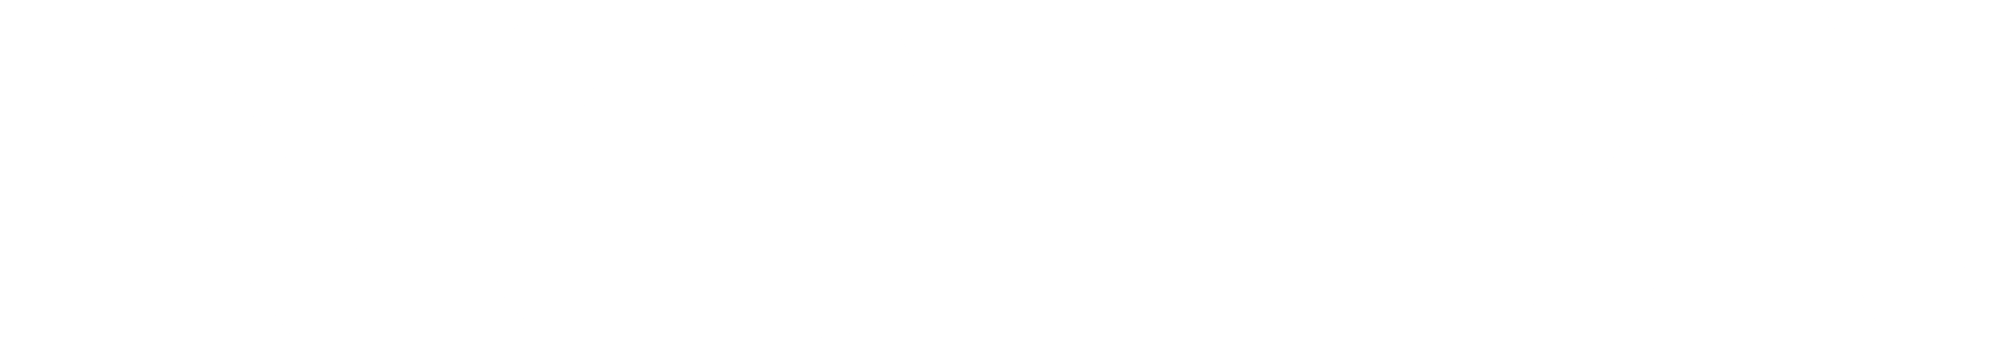 nokia-white-logo-png-5